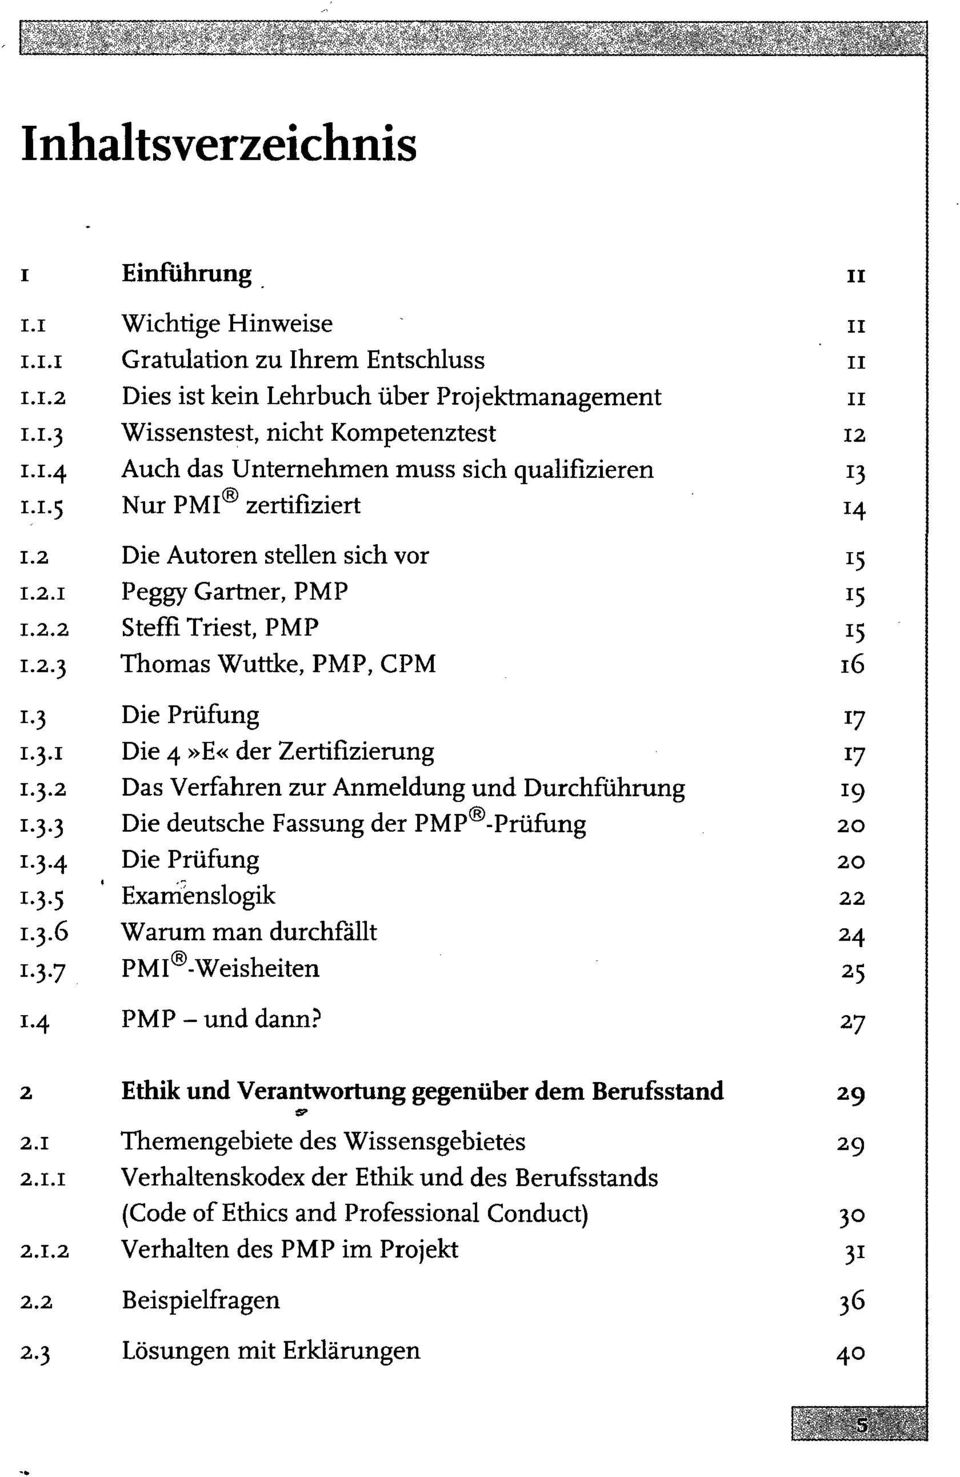 3.2 Das Verfahren zur Anmeldung und Durchführung 19 1.3.3 Die deutsche Fassung der PMP -Prüfung 20 1.3.4 Die Prüfung 20 1.3.5 Examenslogik 22 1.3.6 Warum man durchfällt 24 1.3.7 PMI -Weisheiten 25 1.